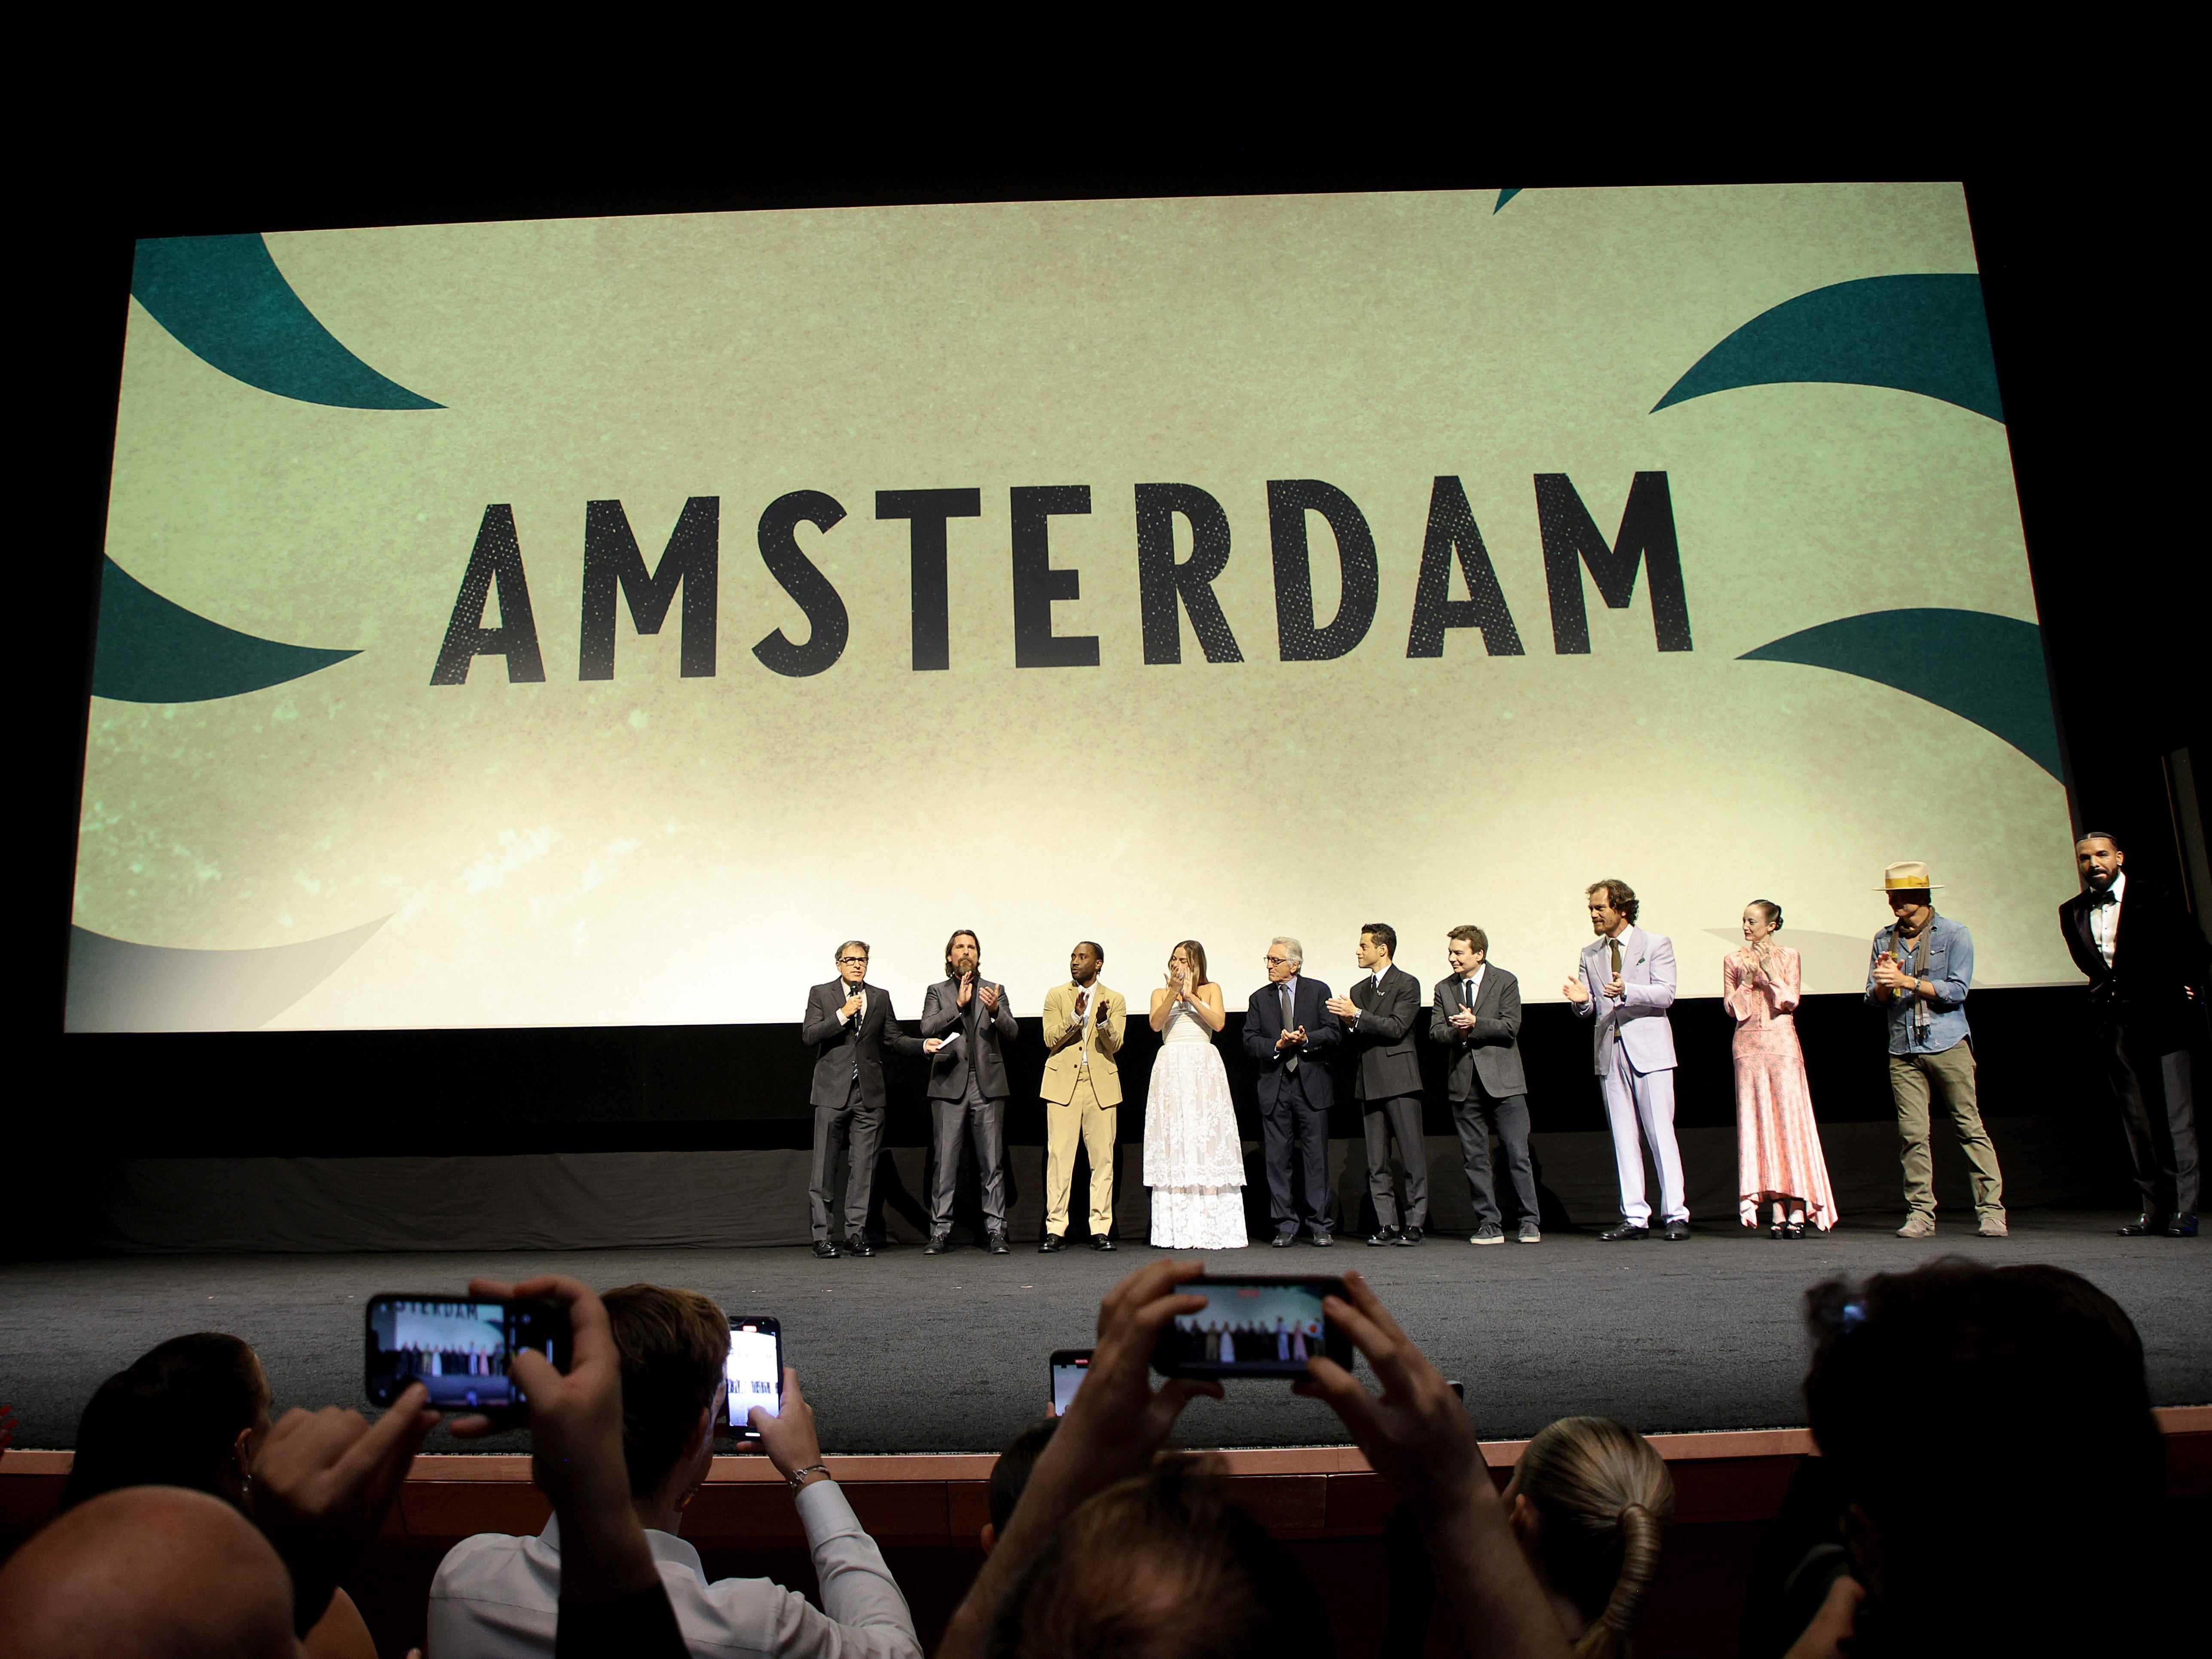 Die Darsteller von „Amsterdam“ stehen vor einer großen Leinwand mit dem Namen des Films, während die Zuschauer mit ihren Handys fotografieren